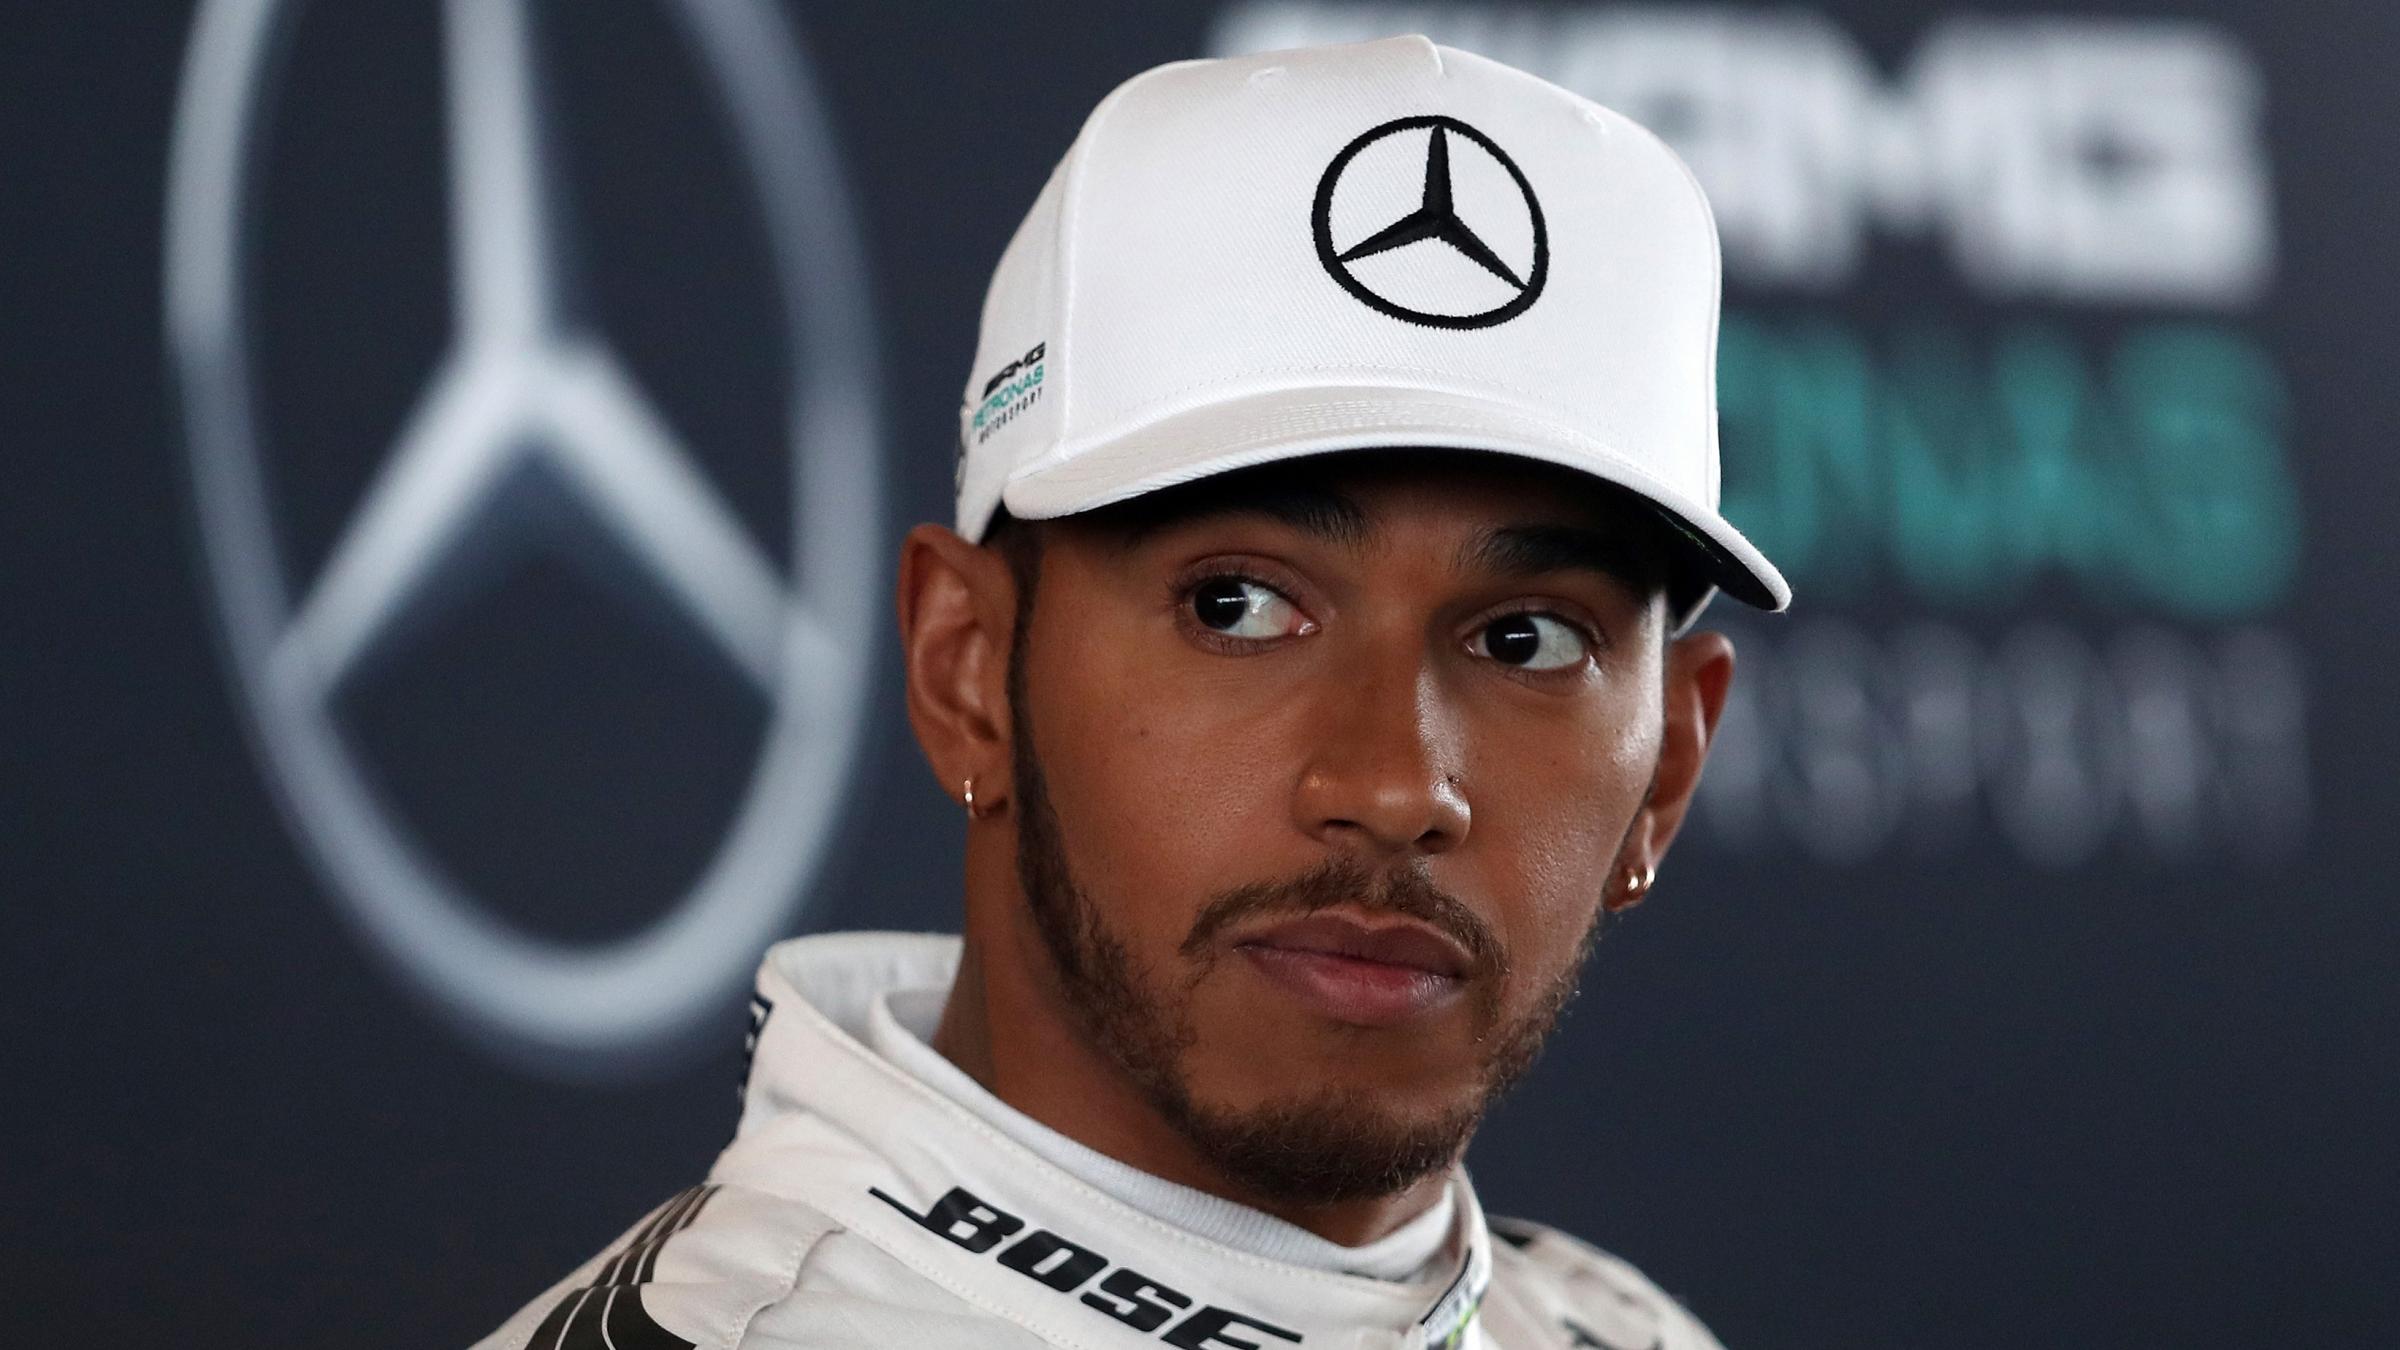 Lewis Hamilton preparing for tough weekend in Baku - Ealing Times